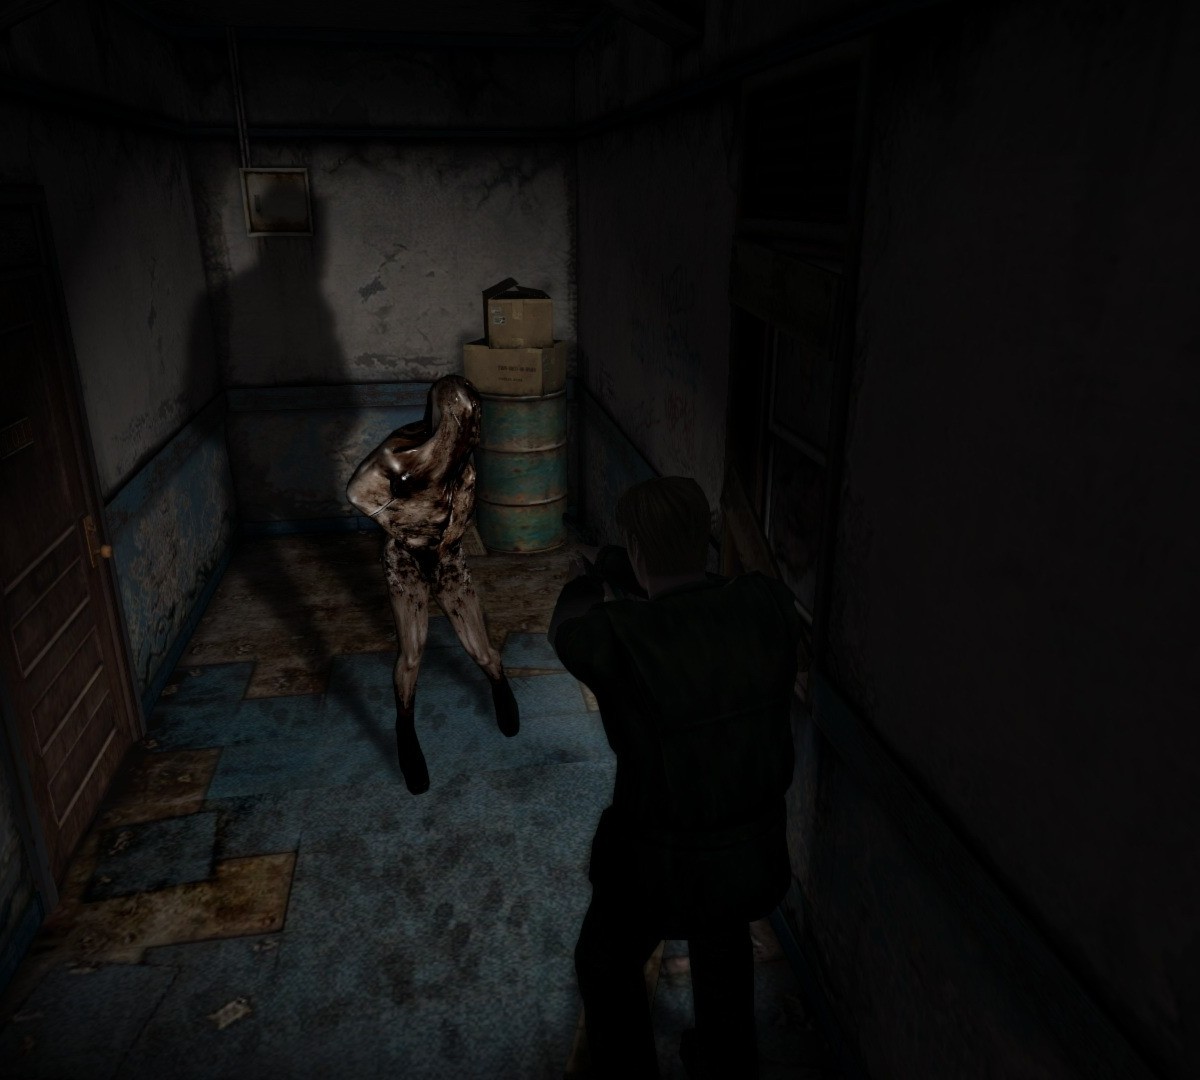 Silent Hill 2 Remake pode ter tido data de lançamento vazada por